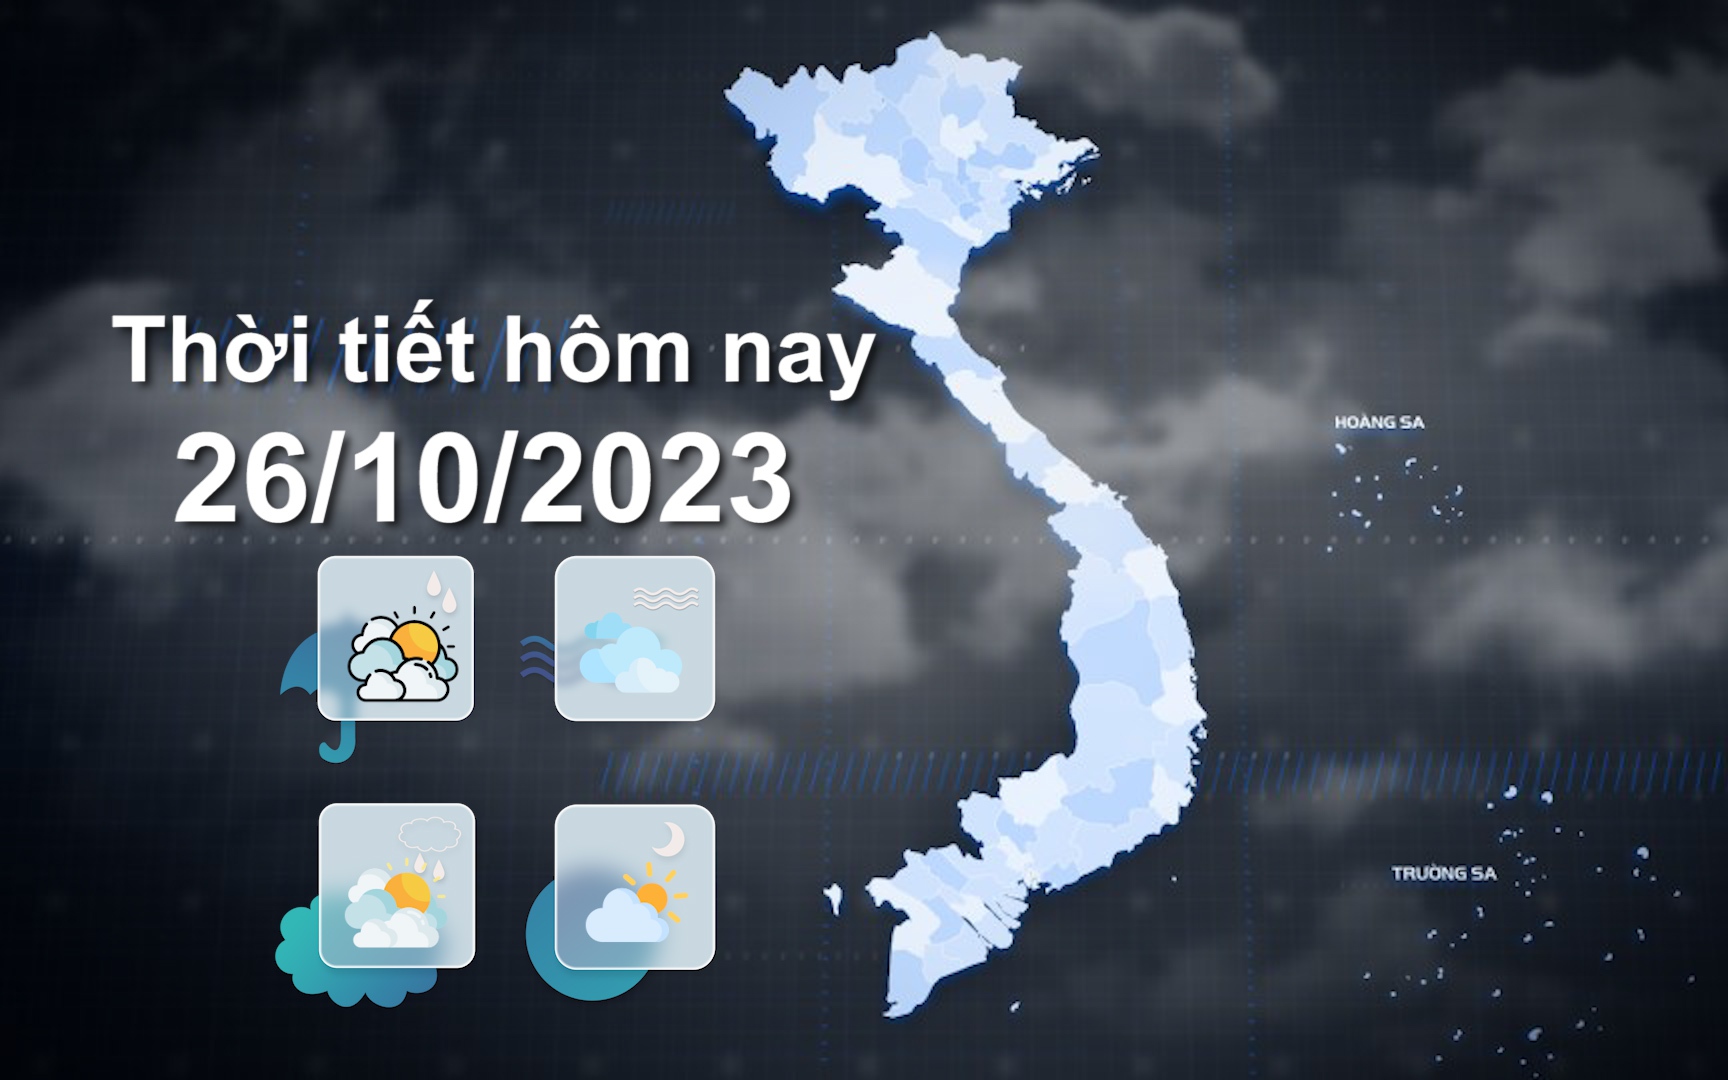 Thời tiết hôm nay 26/10/2023: Bắc Trung Bộ, Tây Nguyên, Nam Bộ chiều, tối và đêm có mưa vừa, mưa to